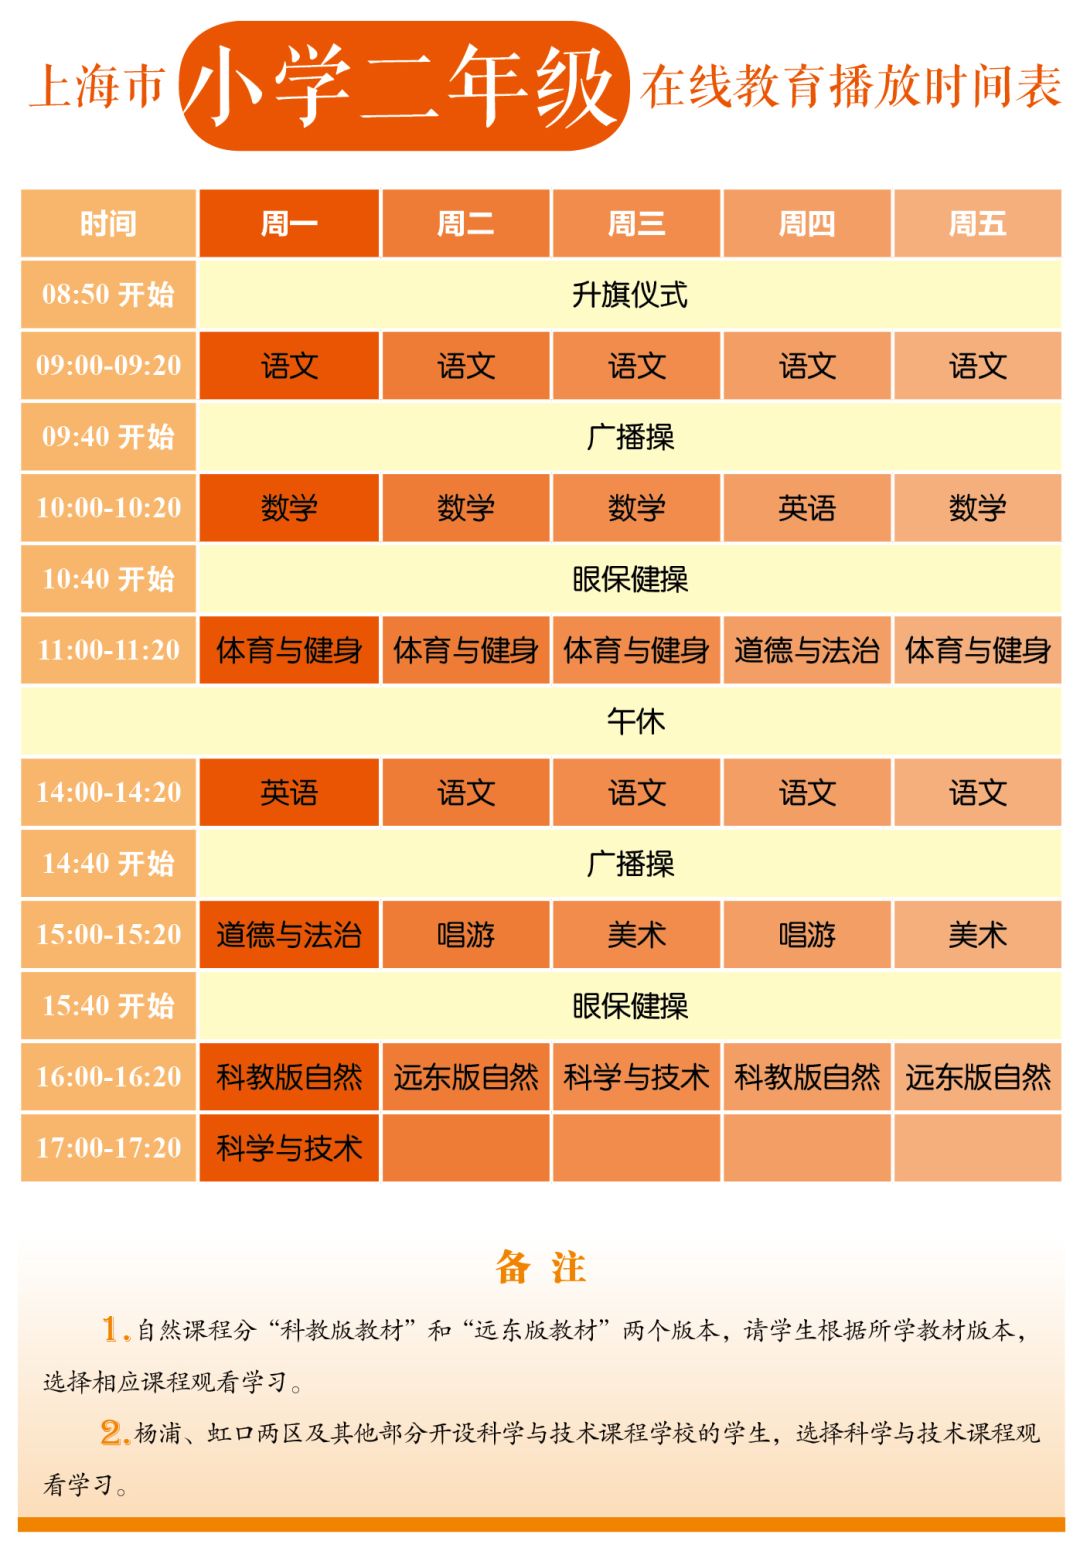 上海市中小学各年级在线教育时间表发布